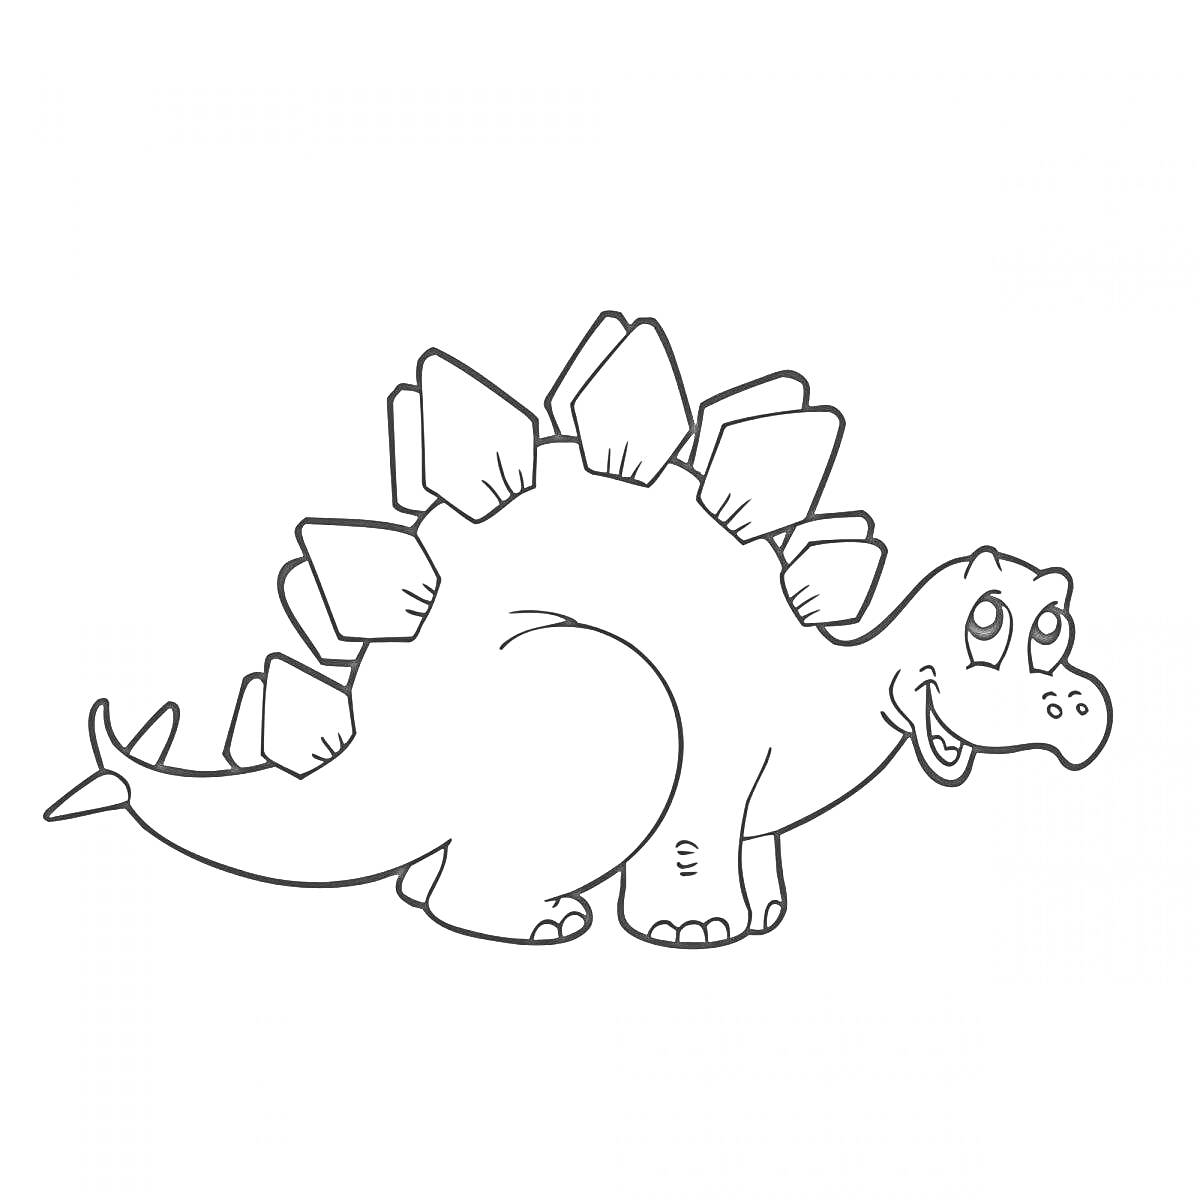 Динозаврик с пластинами на спине и хвосте, улыбающийся, стоящий на четырех лапах